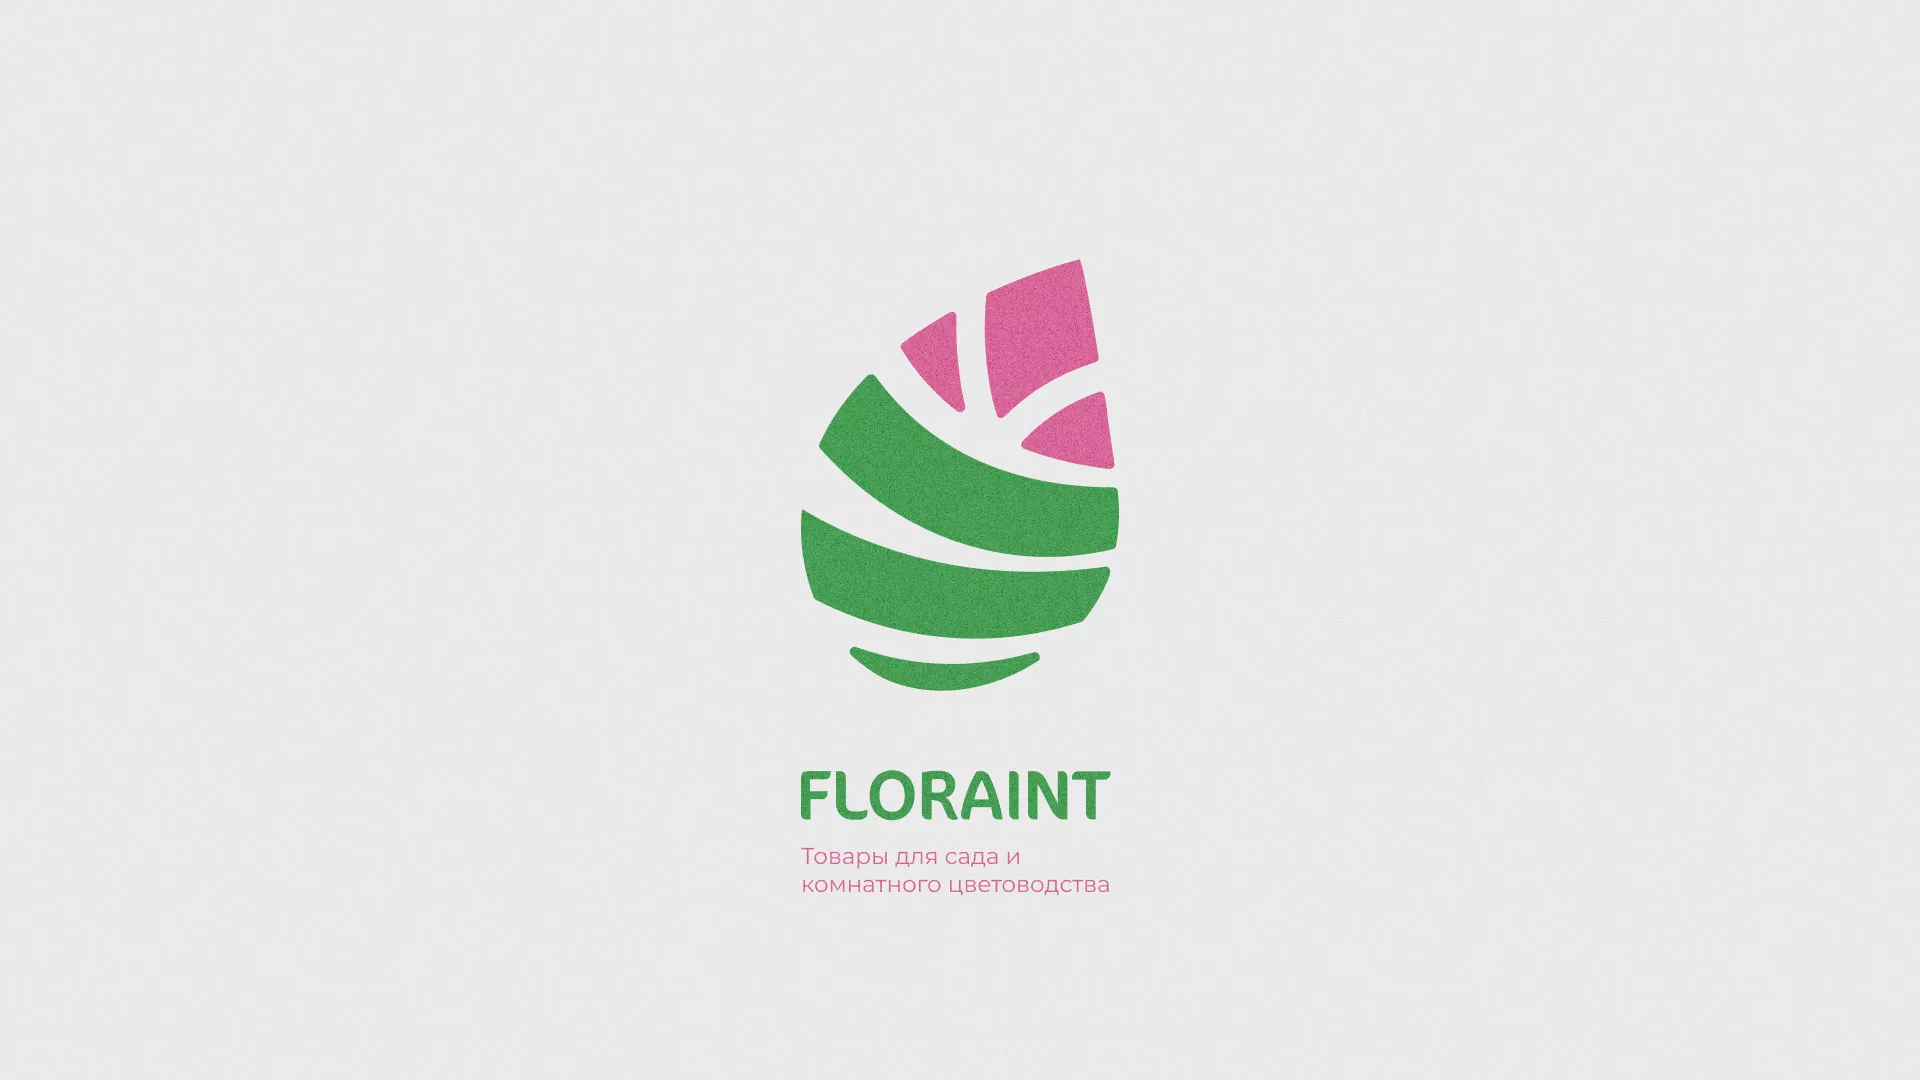 Разработка оформления профиля Instagram для магазина «Floraint» в Санкт-Петербурге